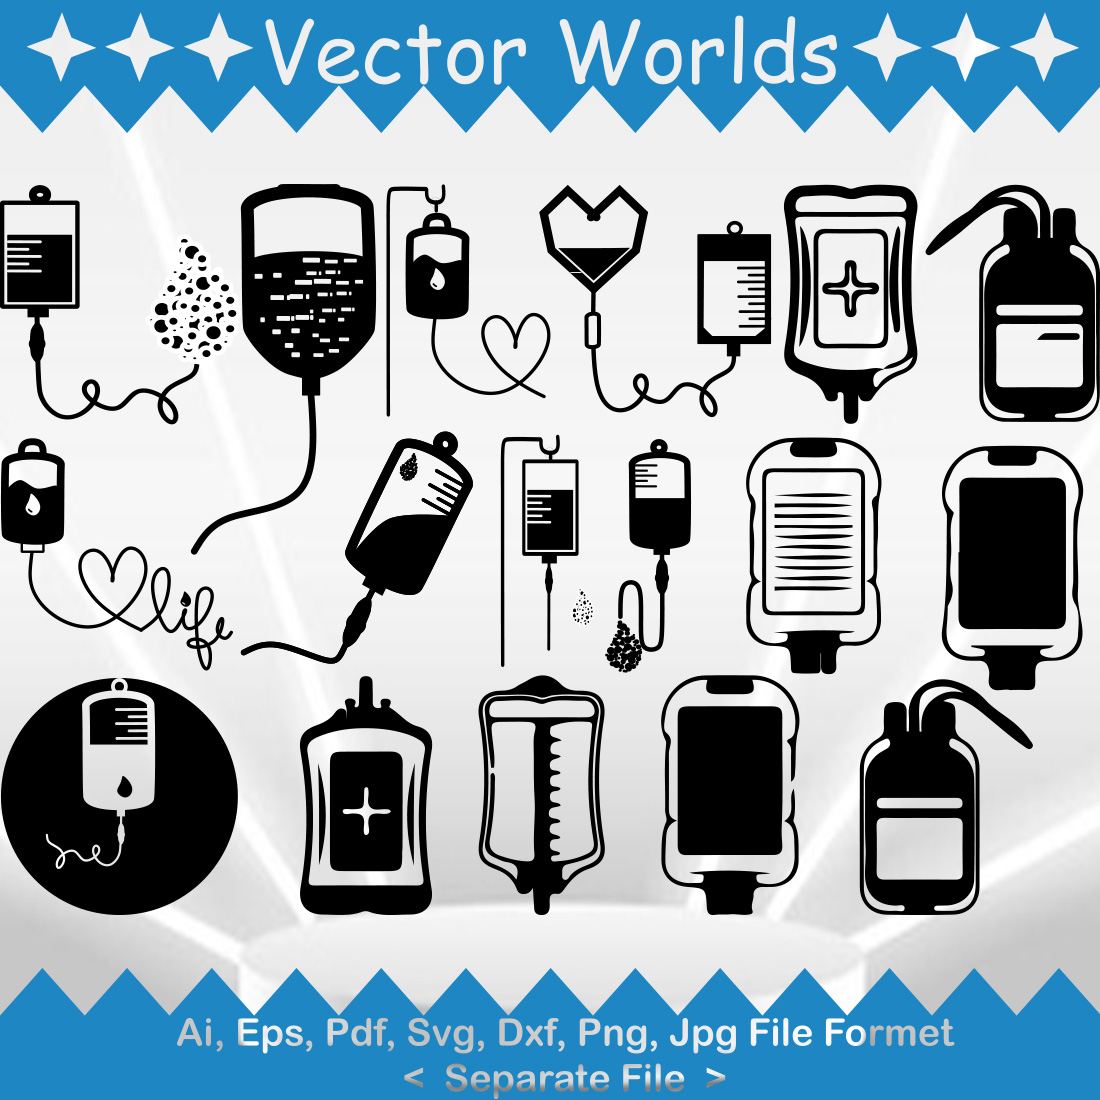 Blood Bag SVG Vector Design cover image.